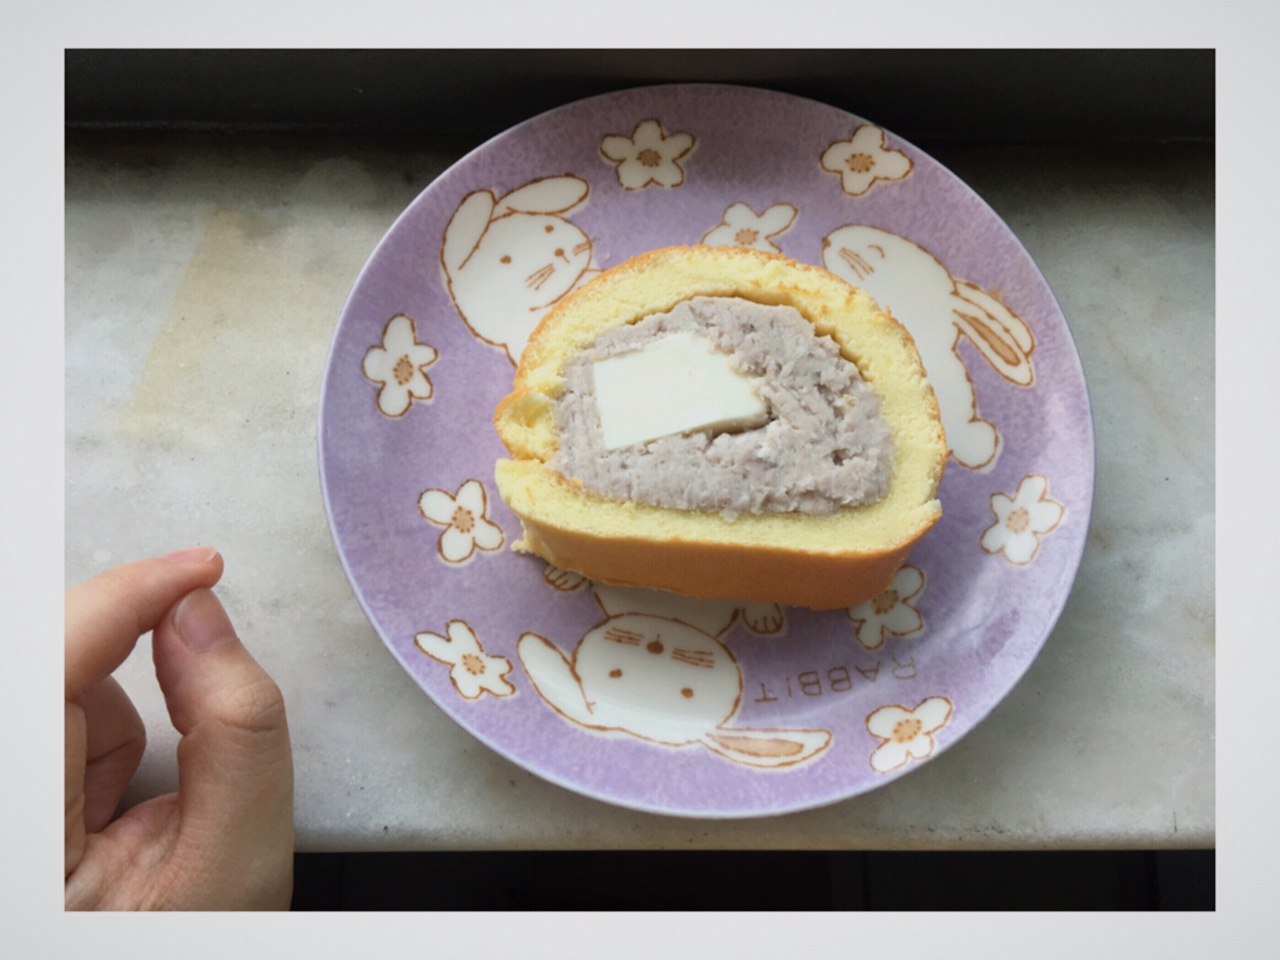 几分甜香芋奶冻卷/卷不裂配方+新鲜香芋奶油+入口即化奶冻/烘焙视频蛋糕篇7「薄卷」